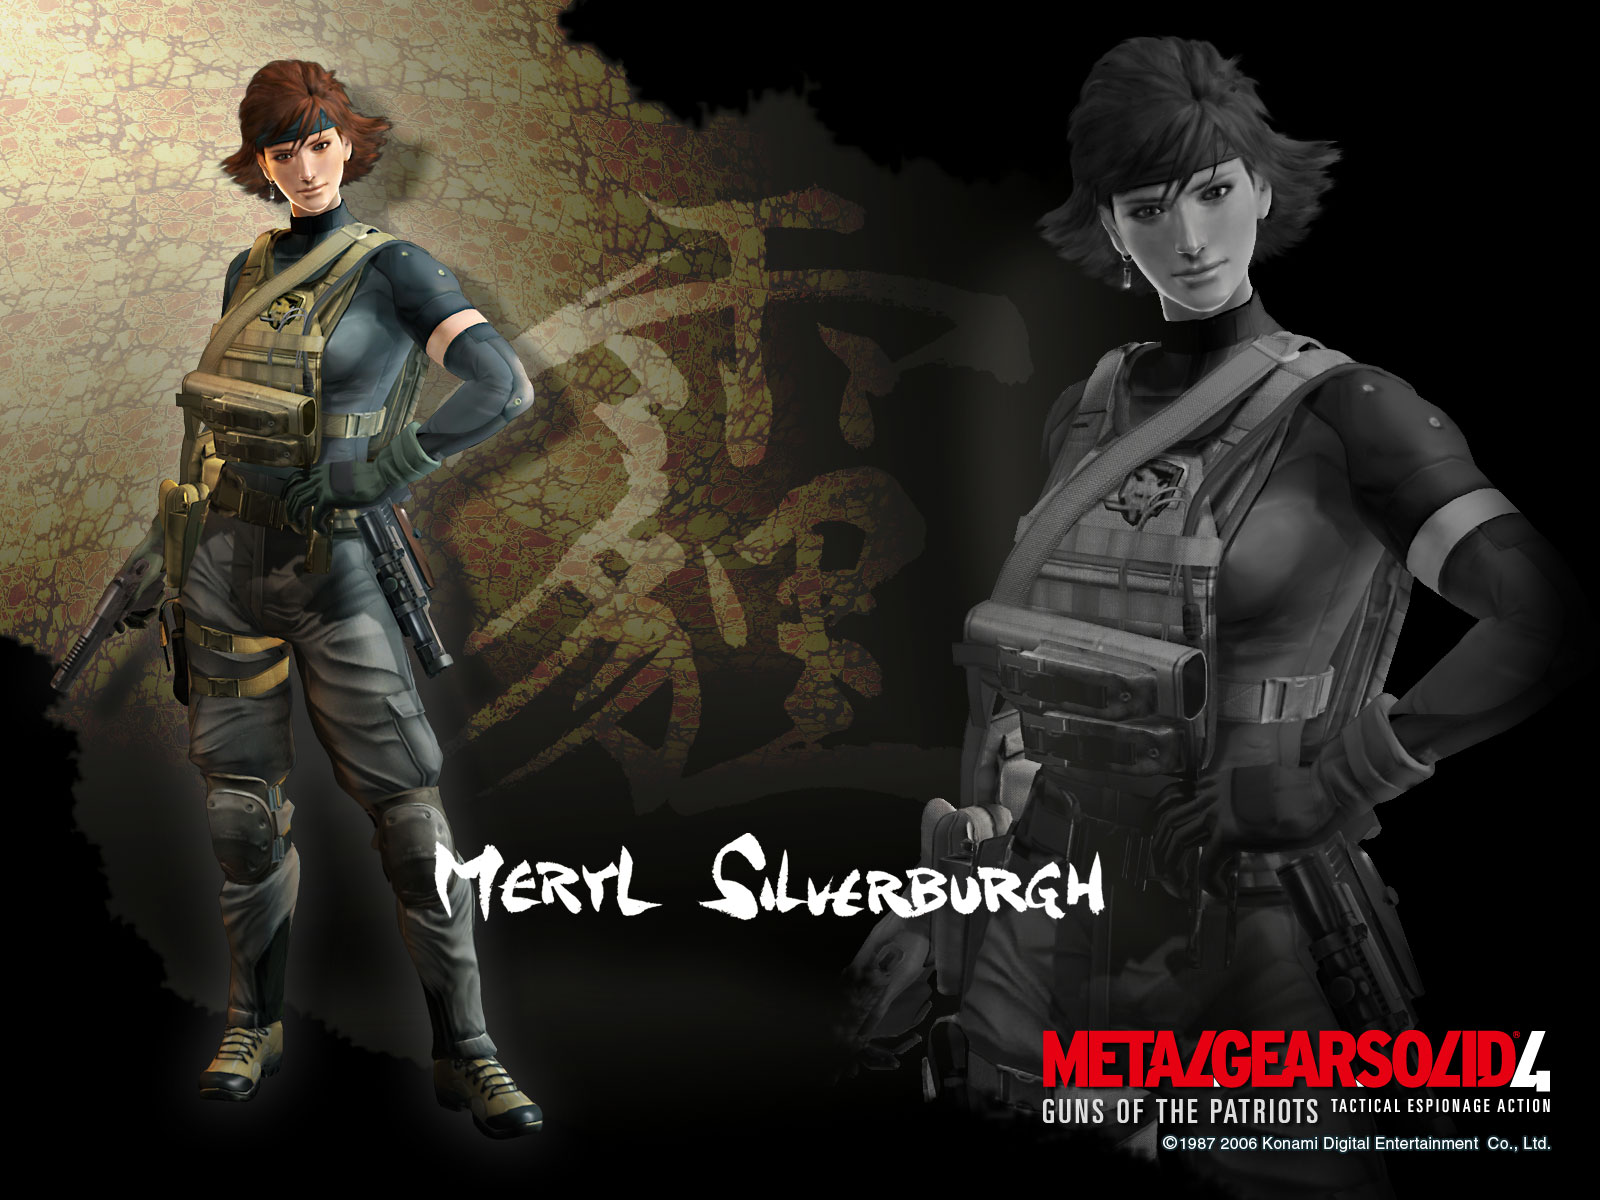 Official MGS4 Meryl Silverburgh Wallpaper - Metal Gear Solid 4 ...